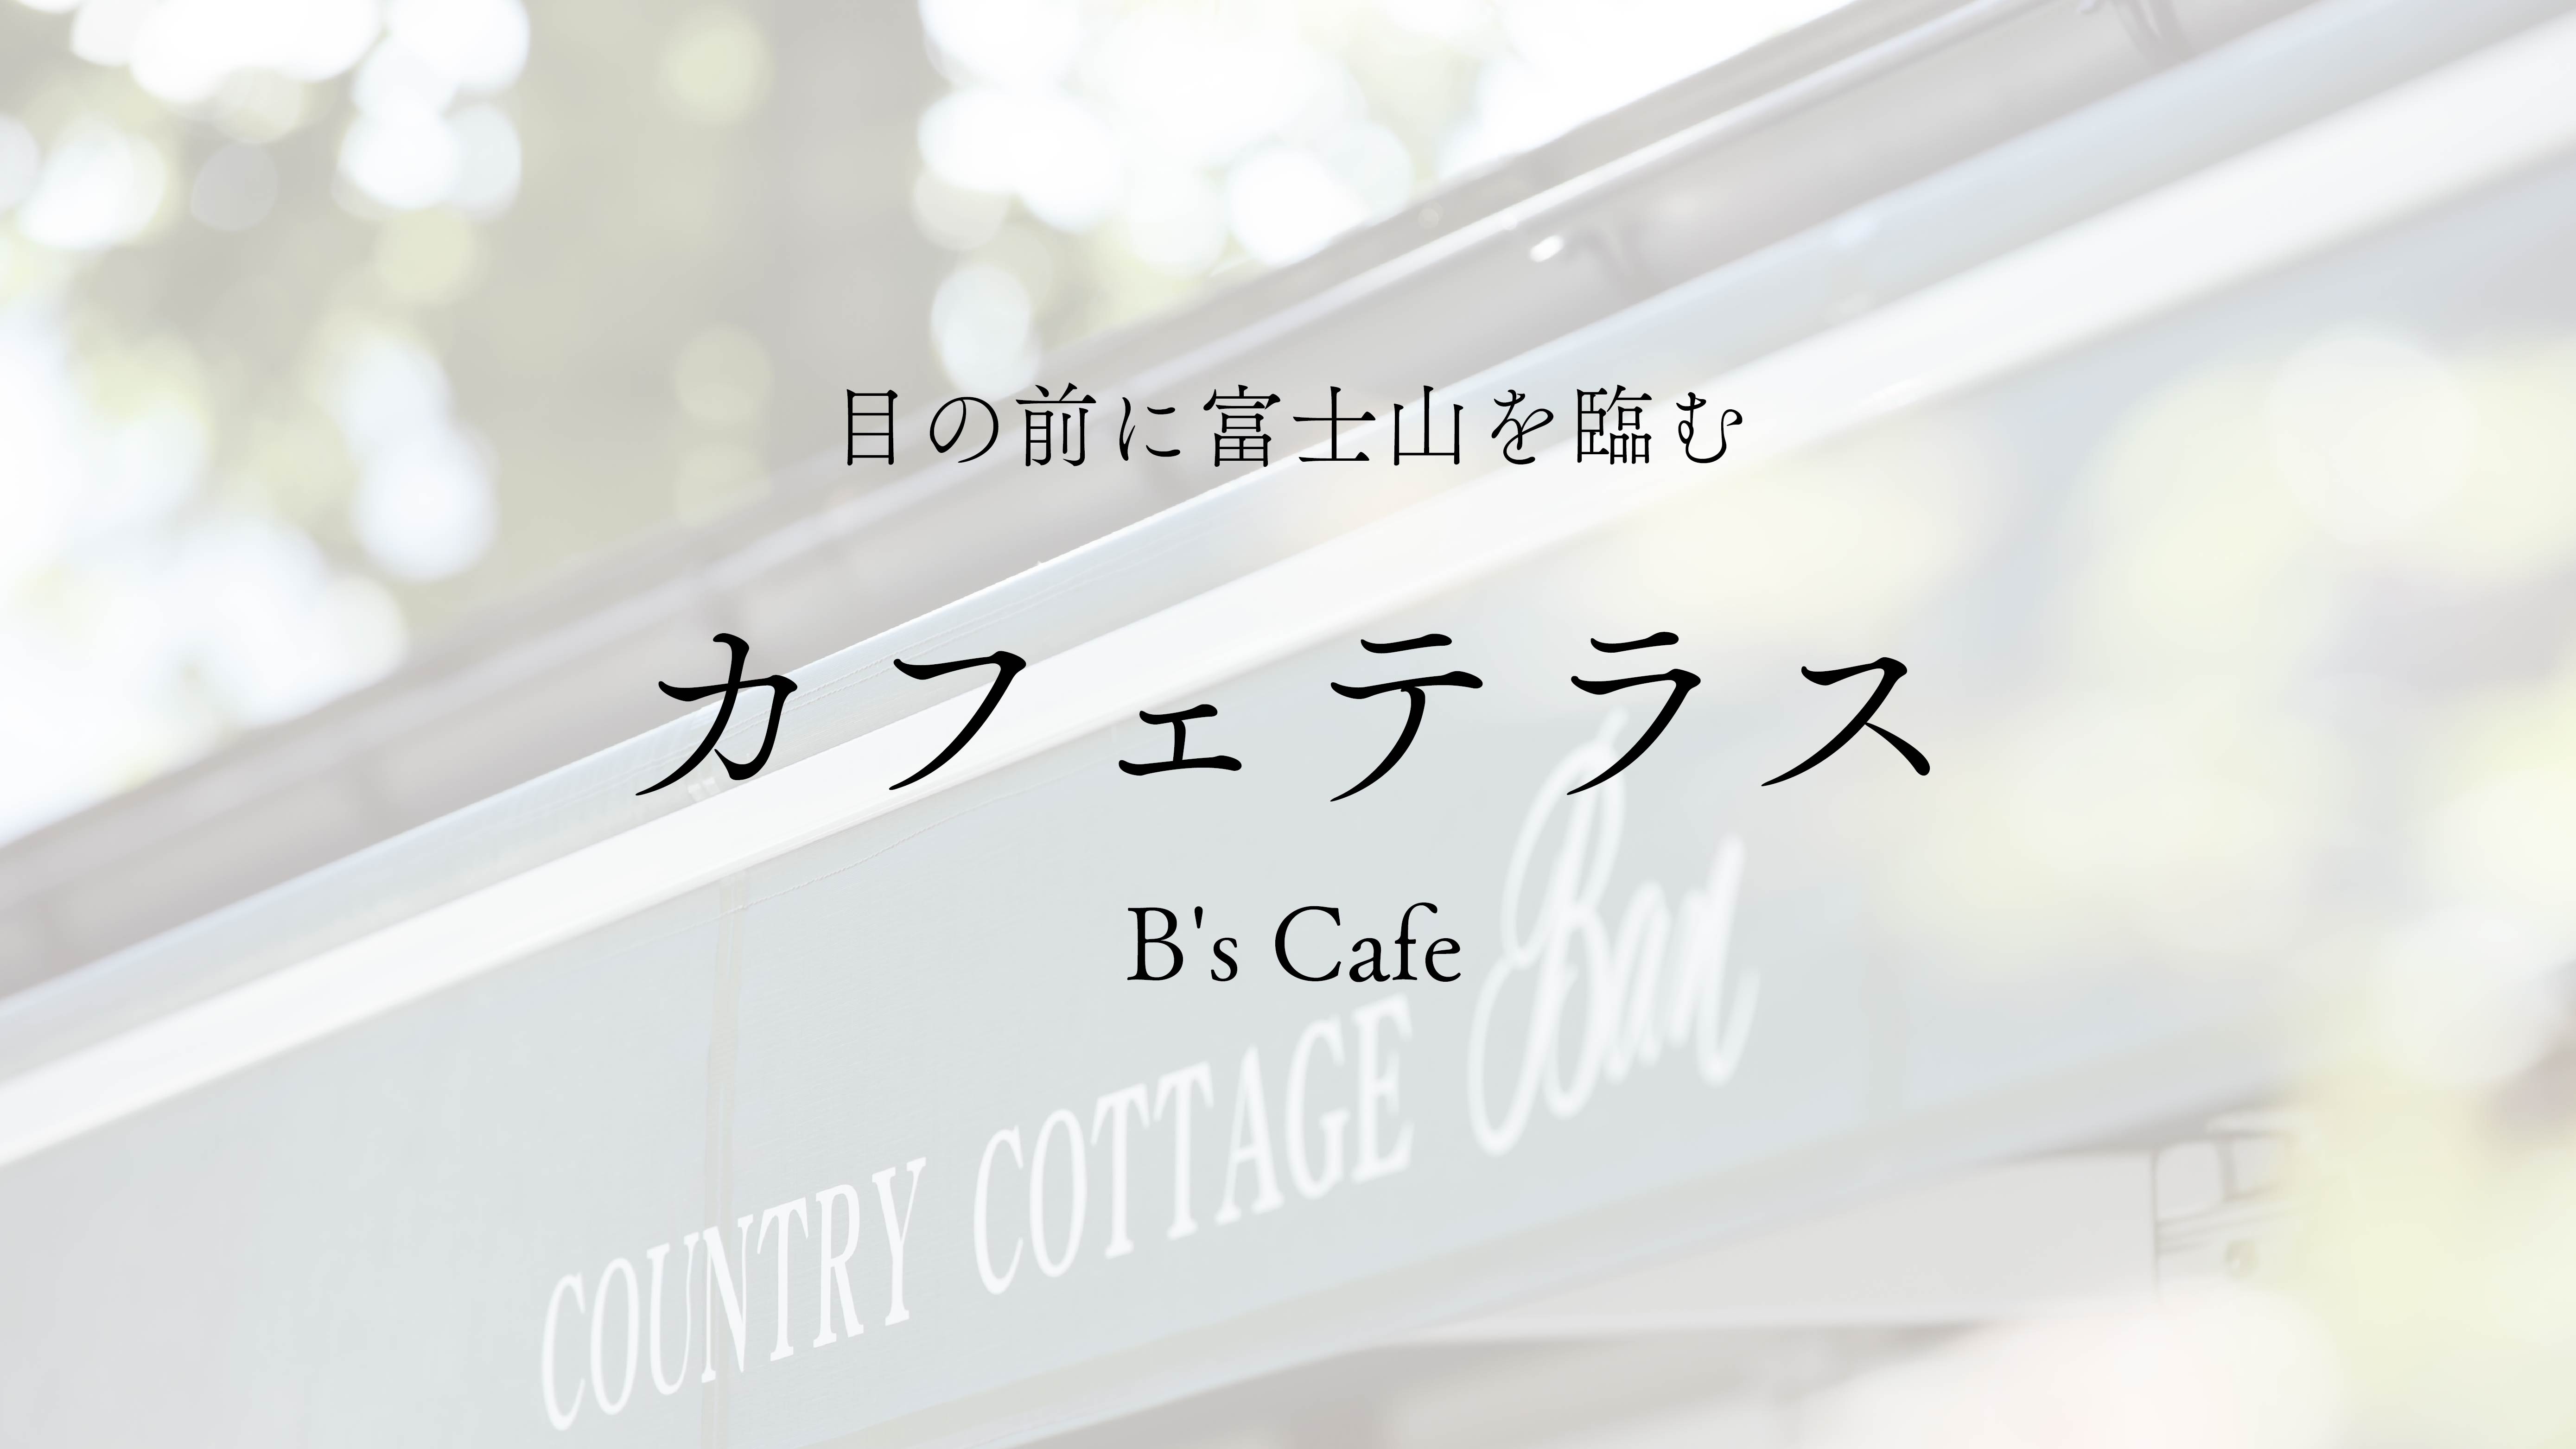 【館内施設】B's cafe —目の前に富士山を臨むカフェテラス